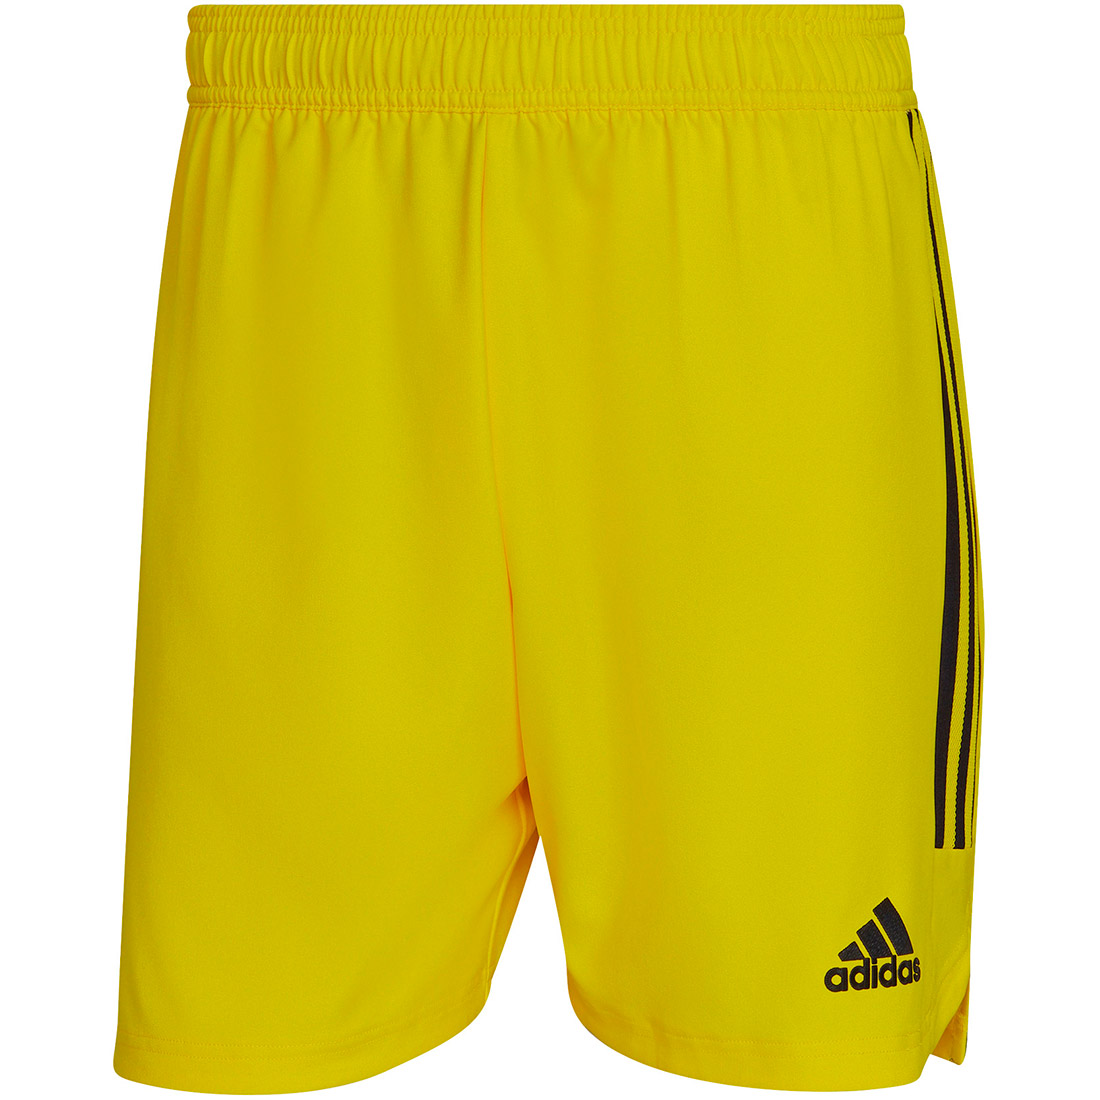 Adidas Herren MD Shorts Condivo 22 gelb-schwarz